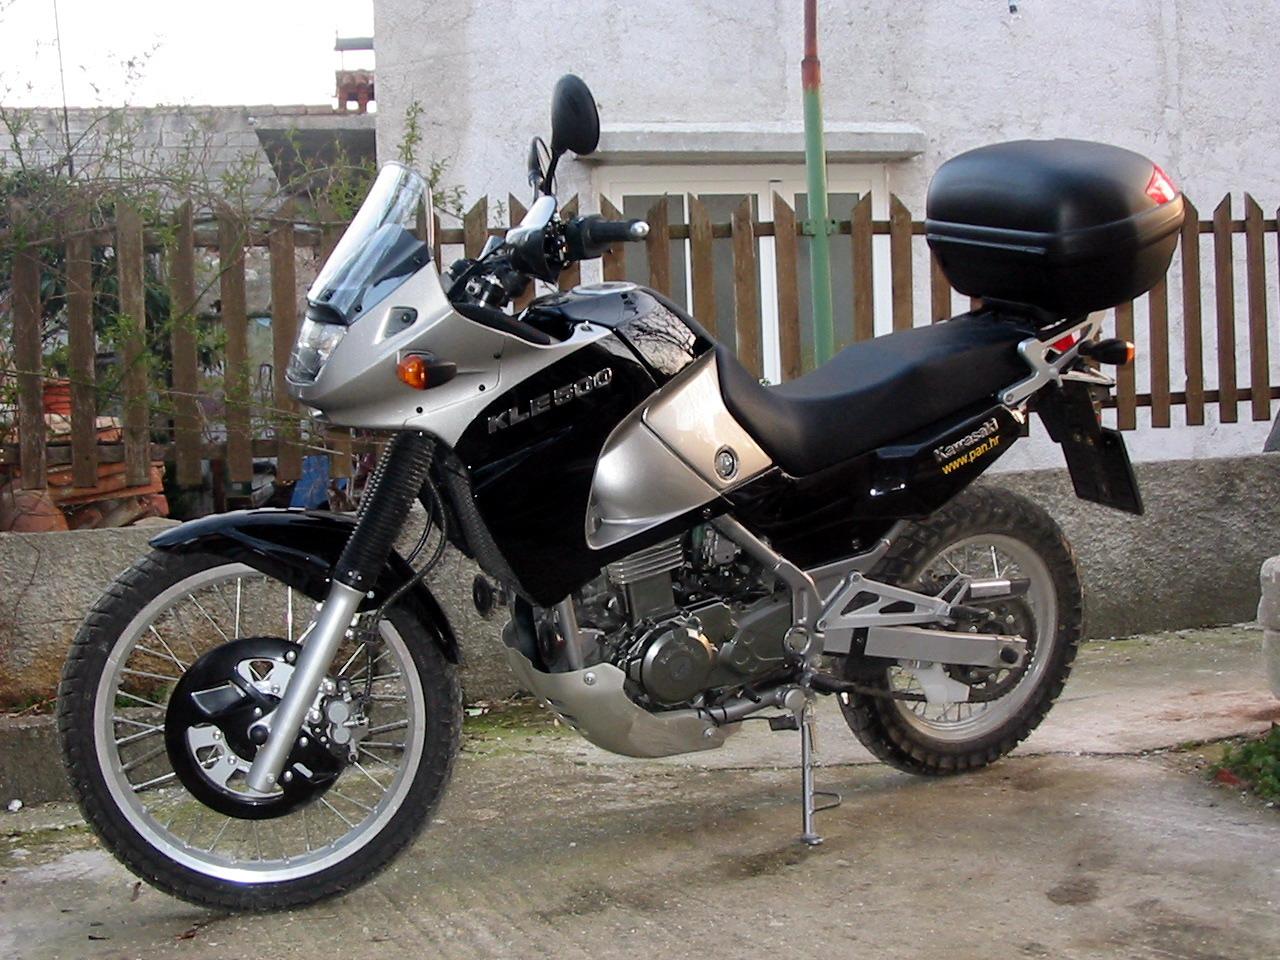 Тест-драйв мотоцикла Kawasaki KLE500